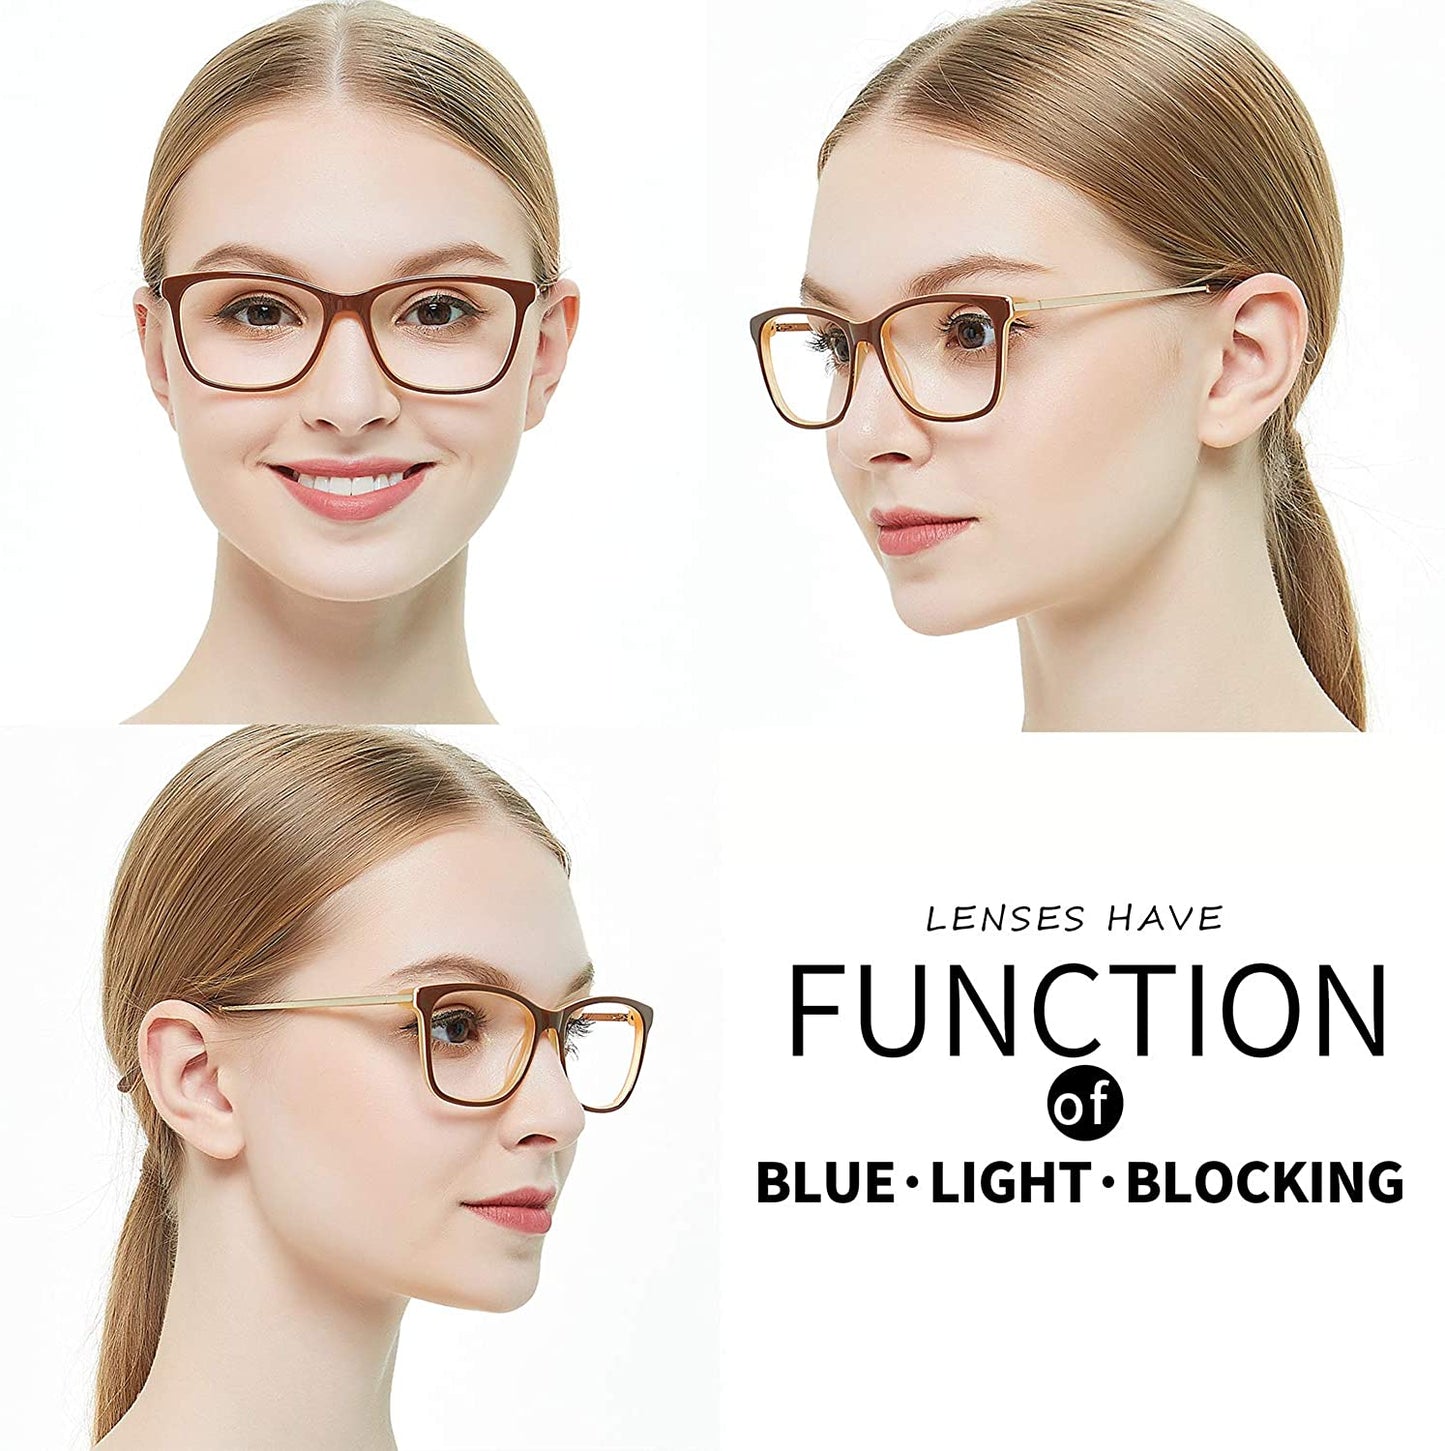 Women Anti-blue Light Rectangular Computer Eyeglasses Frame